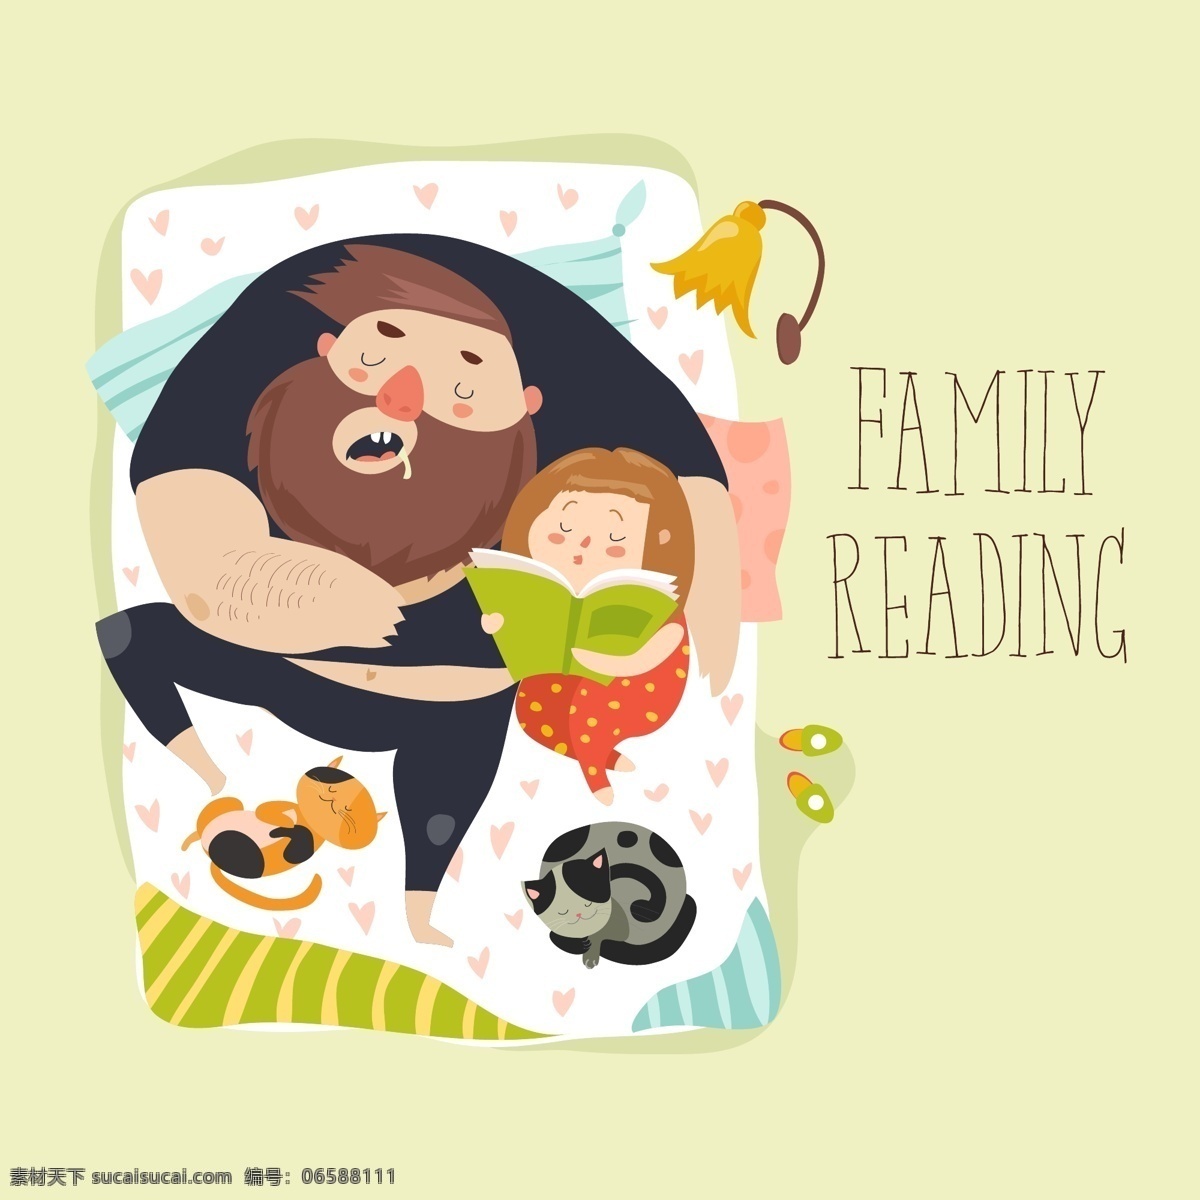 可爱 女儿 读 睡 前 故事 父亲 读书 卡通素材 看书 可爱女儿 免抠 免抠素材 人物 矢量素材 书籍 睡前故事